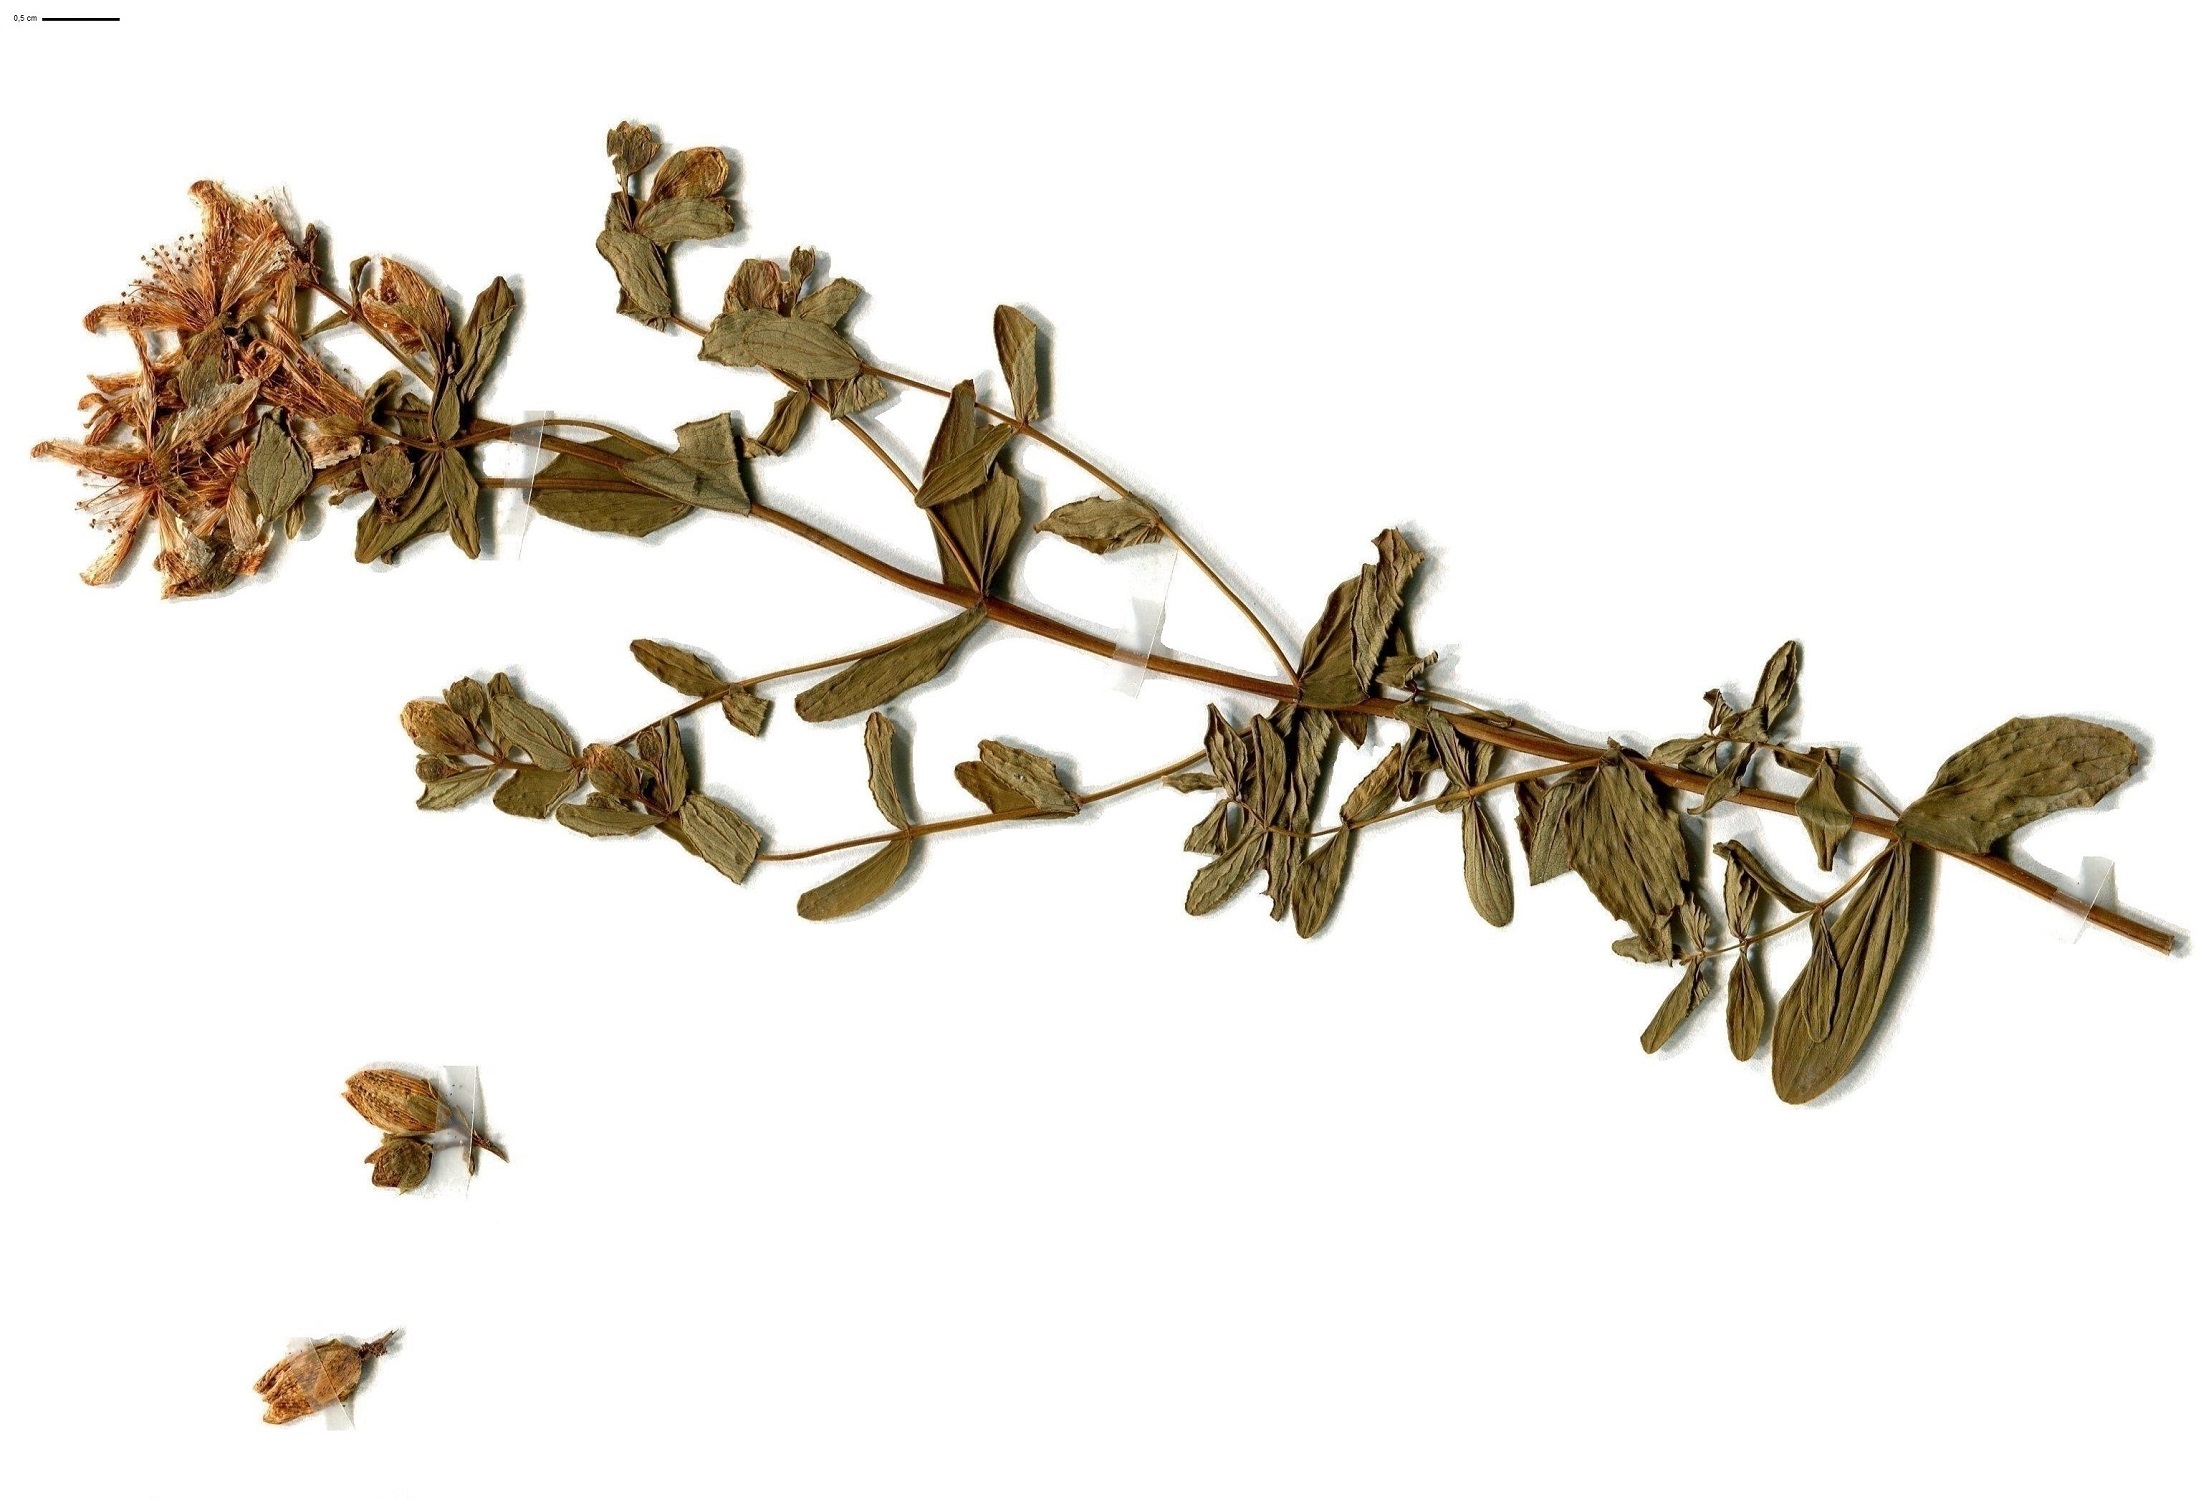 Hypericum maculatum subsp. maculatum (Hypericaceae)